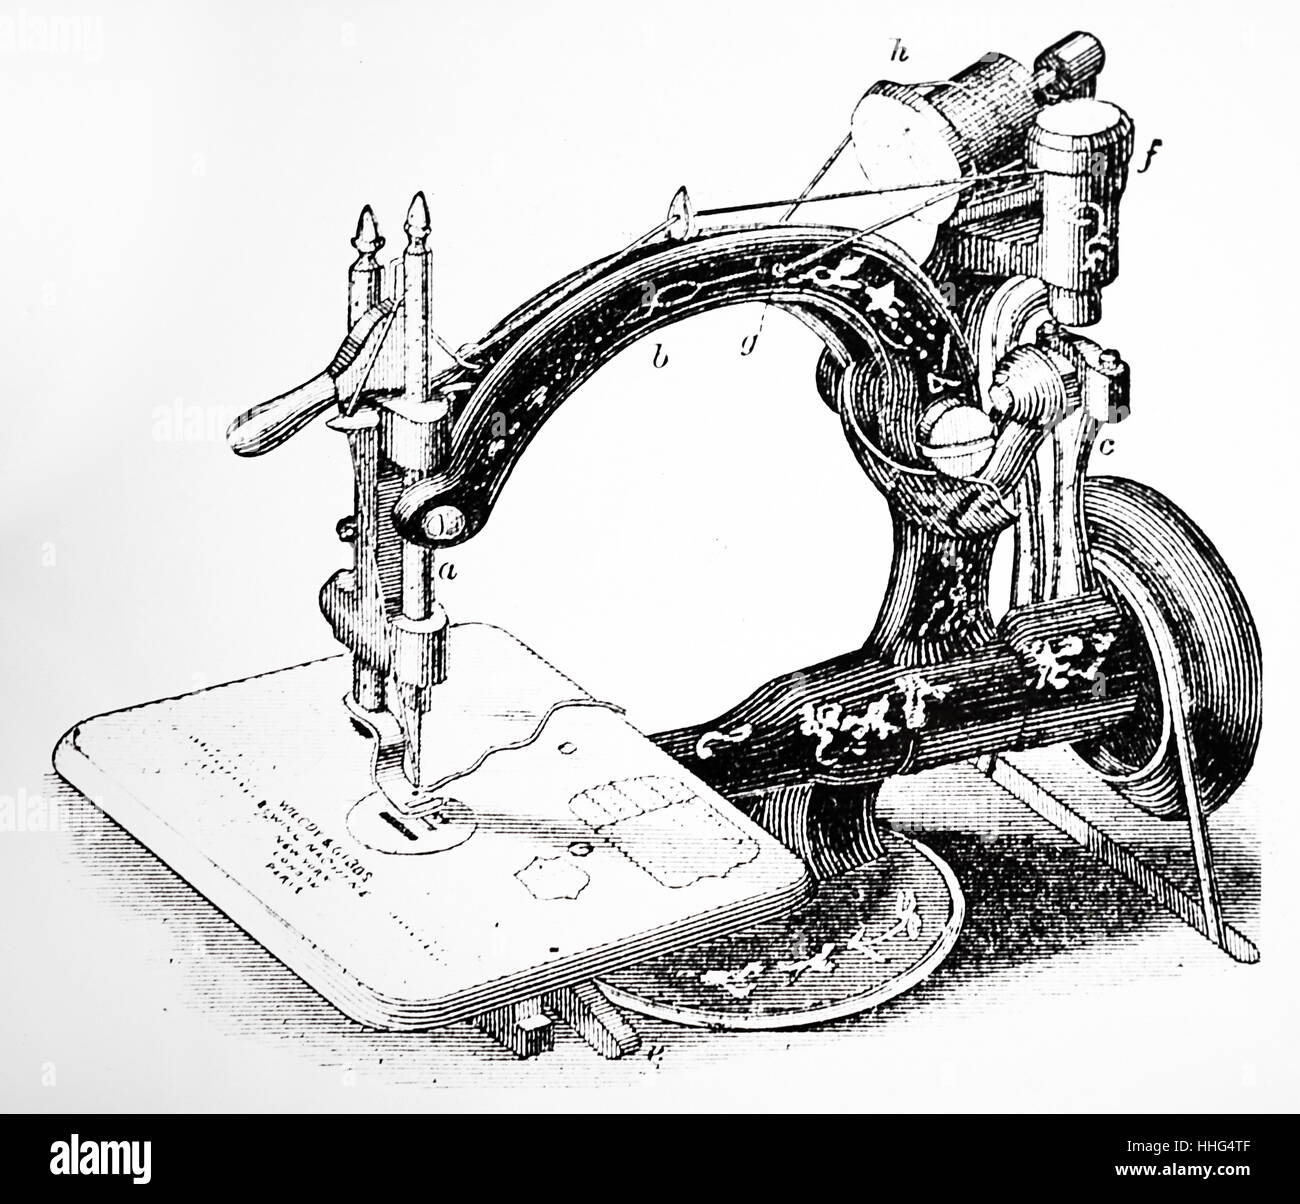 Wilcox & Gibbs sewing machine. London, dated 1880. Stock Photo